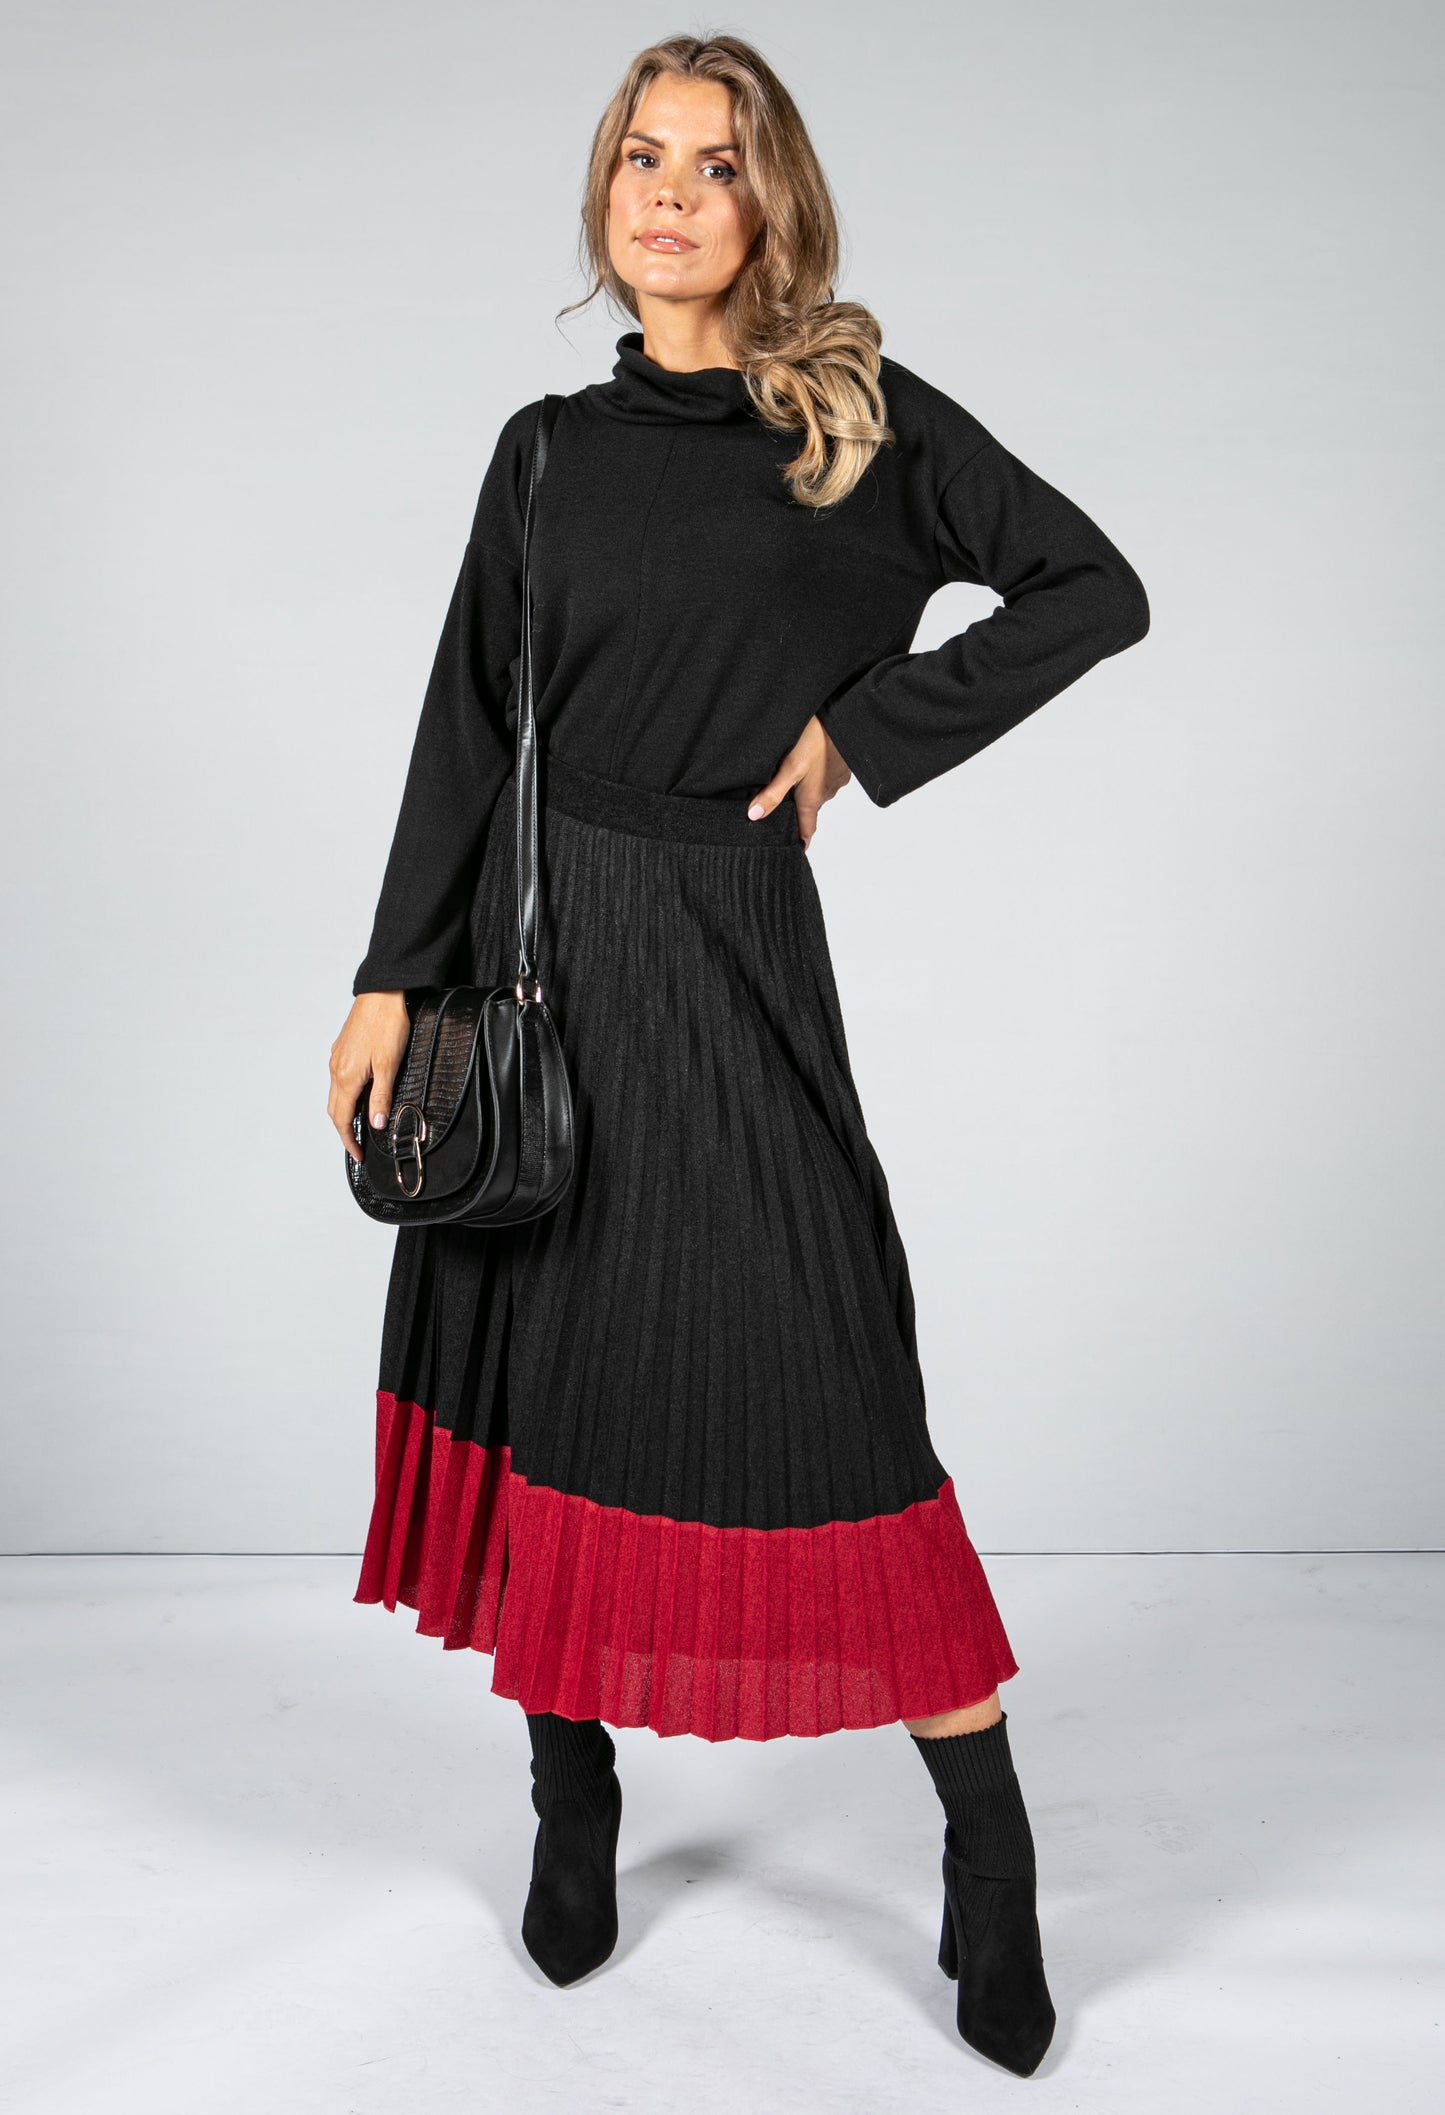 Soft Feel Fine Knit Pleated Skirt in Black & Bordeaux